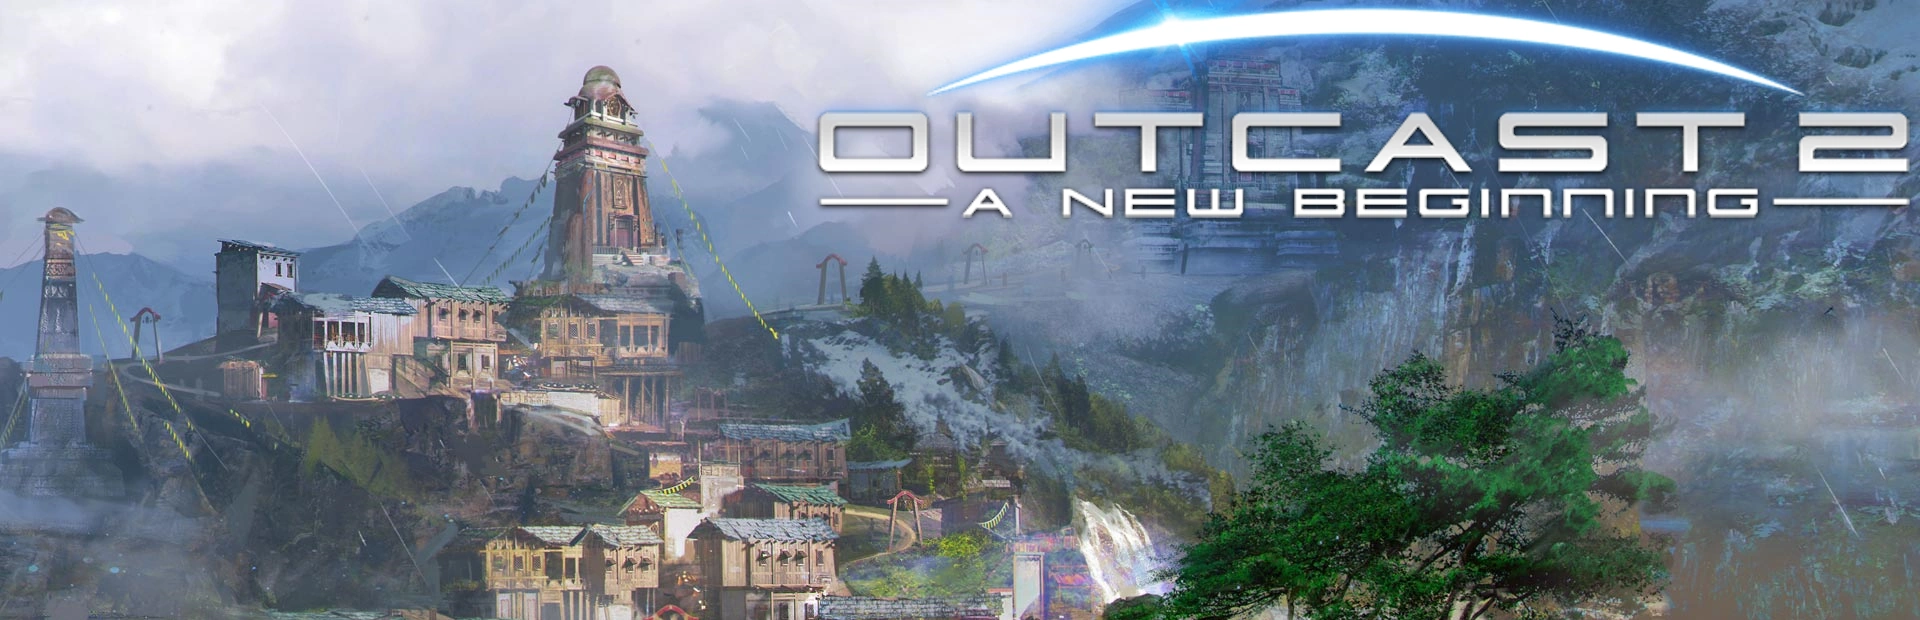 دانلود بازی Outcast -A New Beginning برای کامپیوتر | گیمباتو